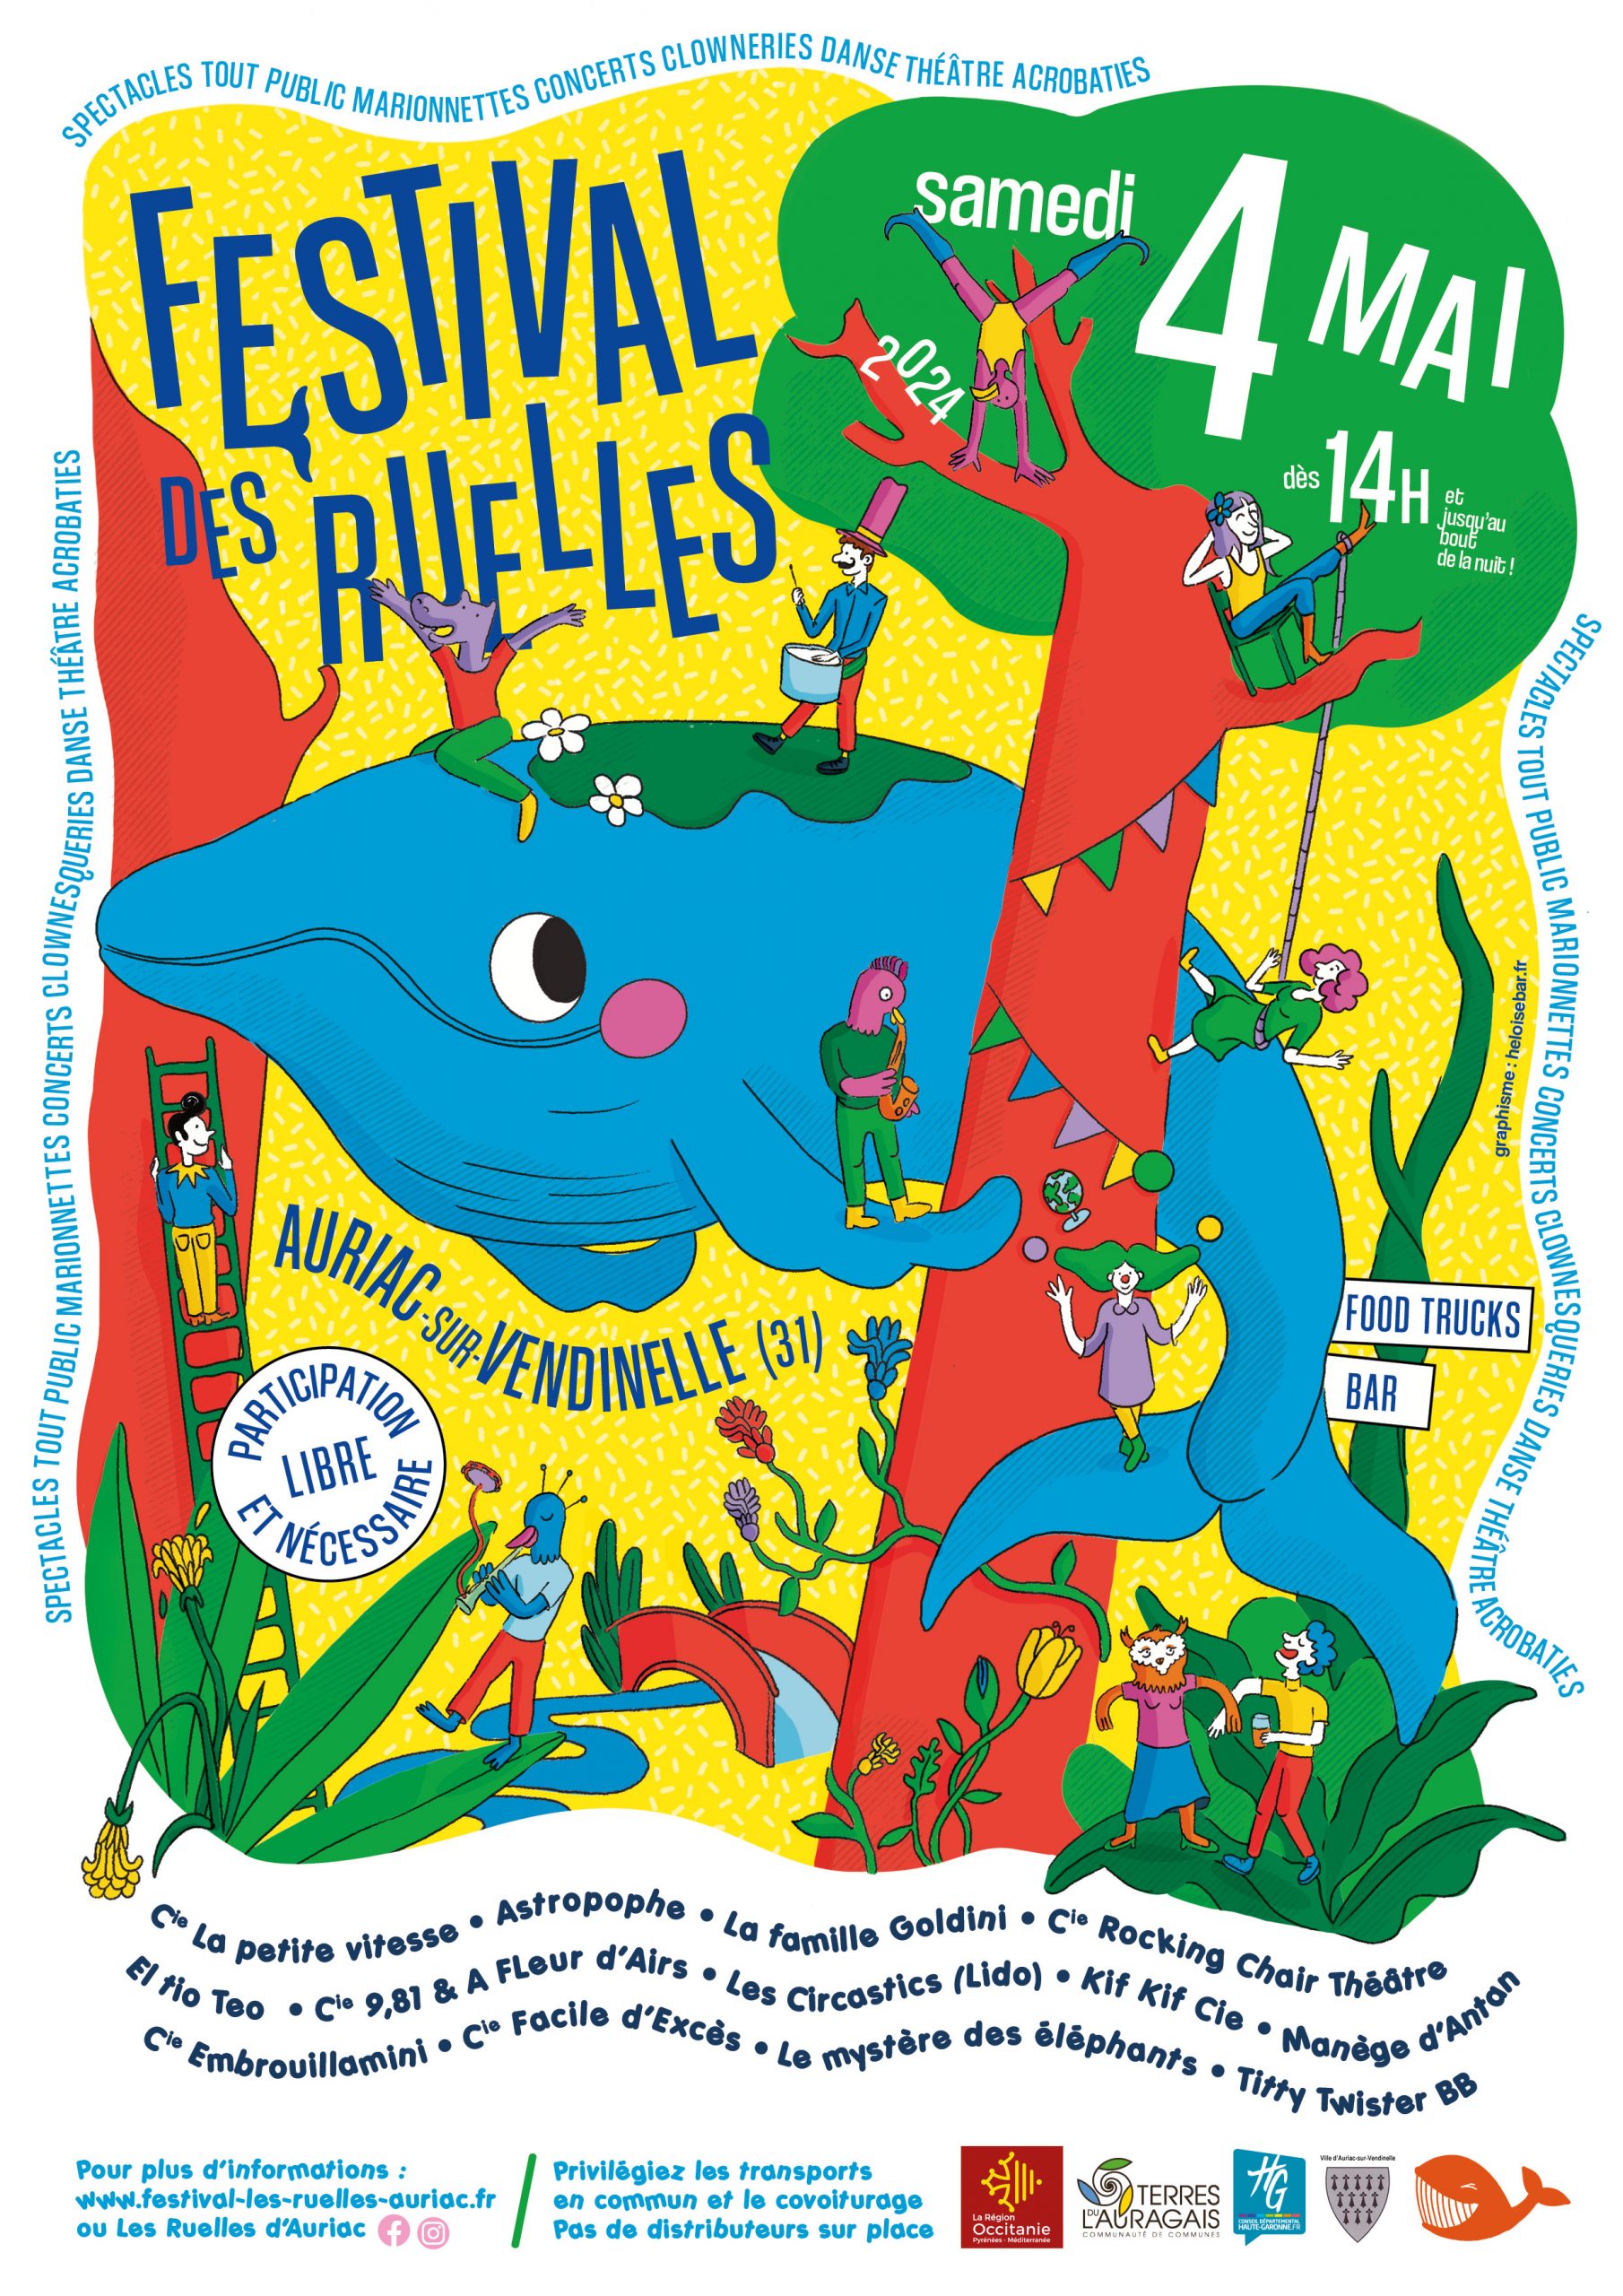 Festival des Ruelles • Spectacles et arts de rue